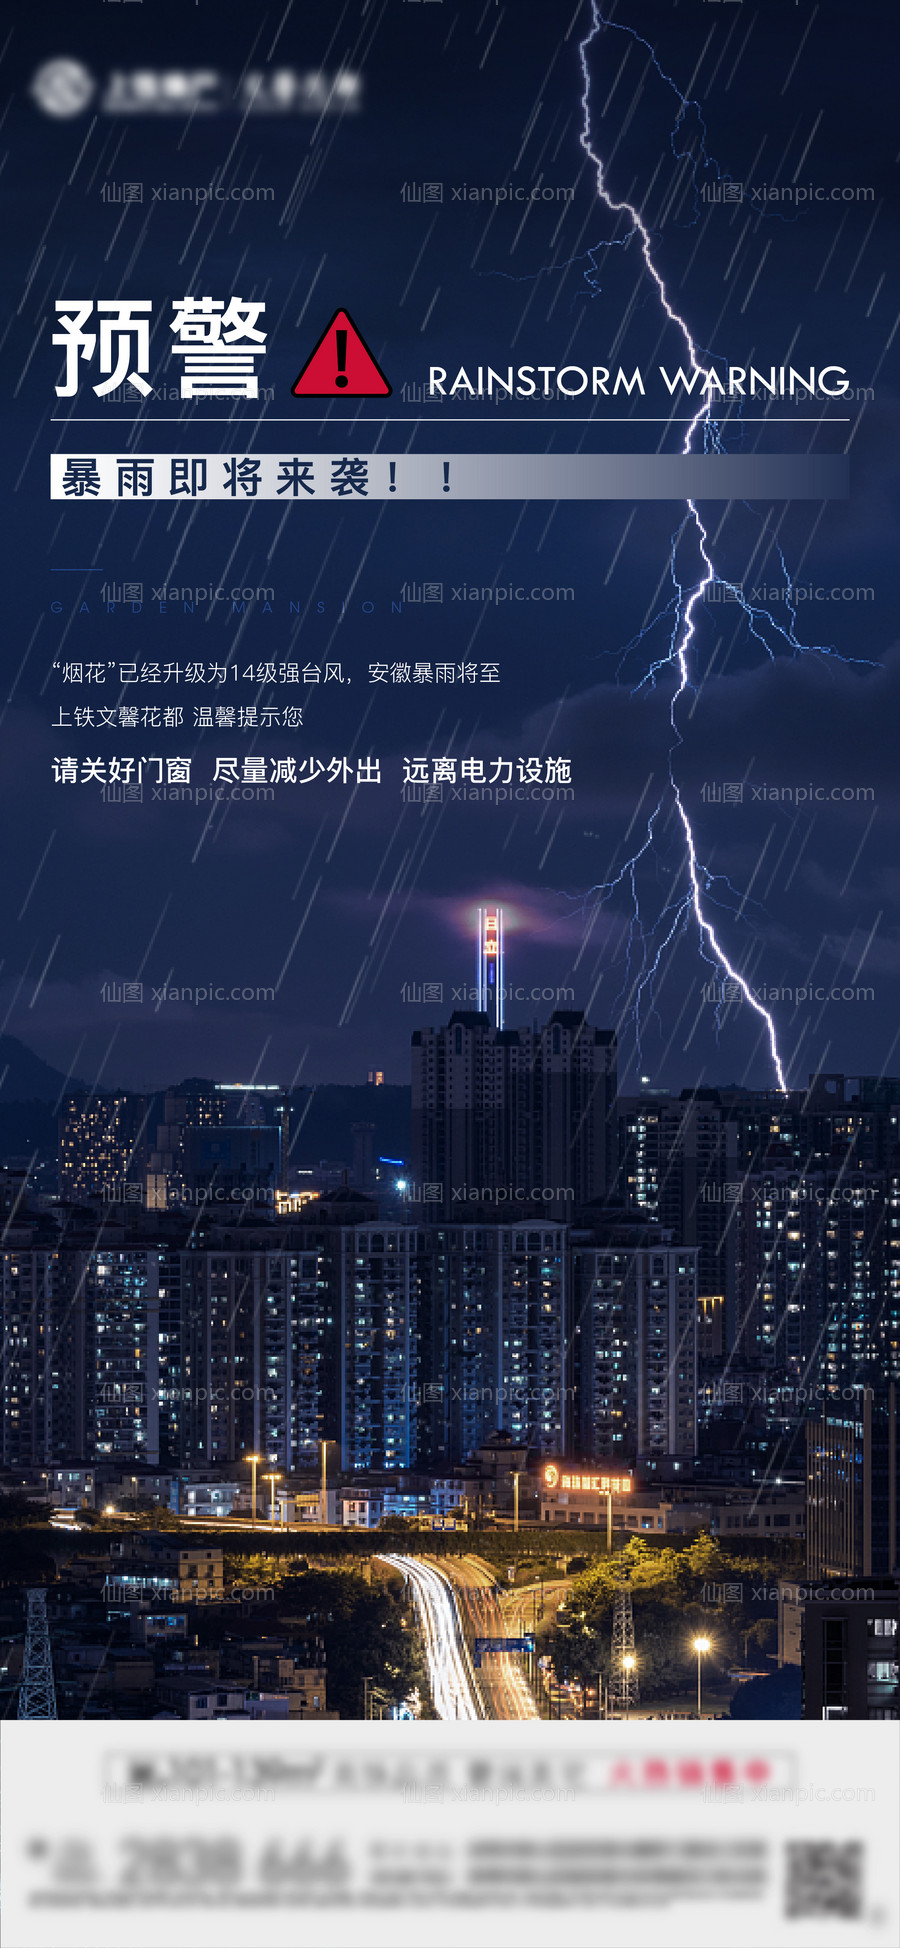 素材乐-暴雨台风预警提示海报